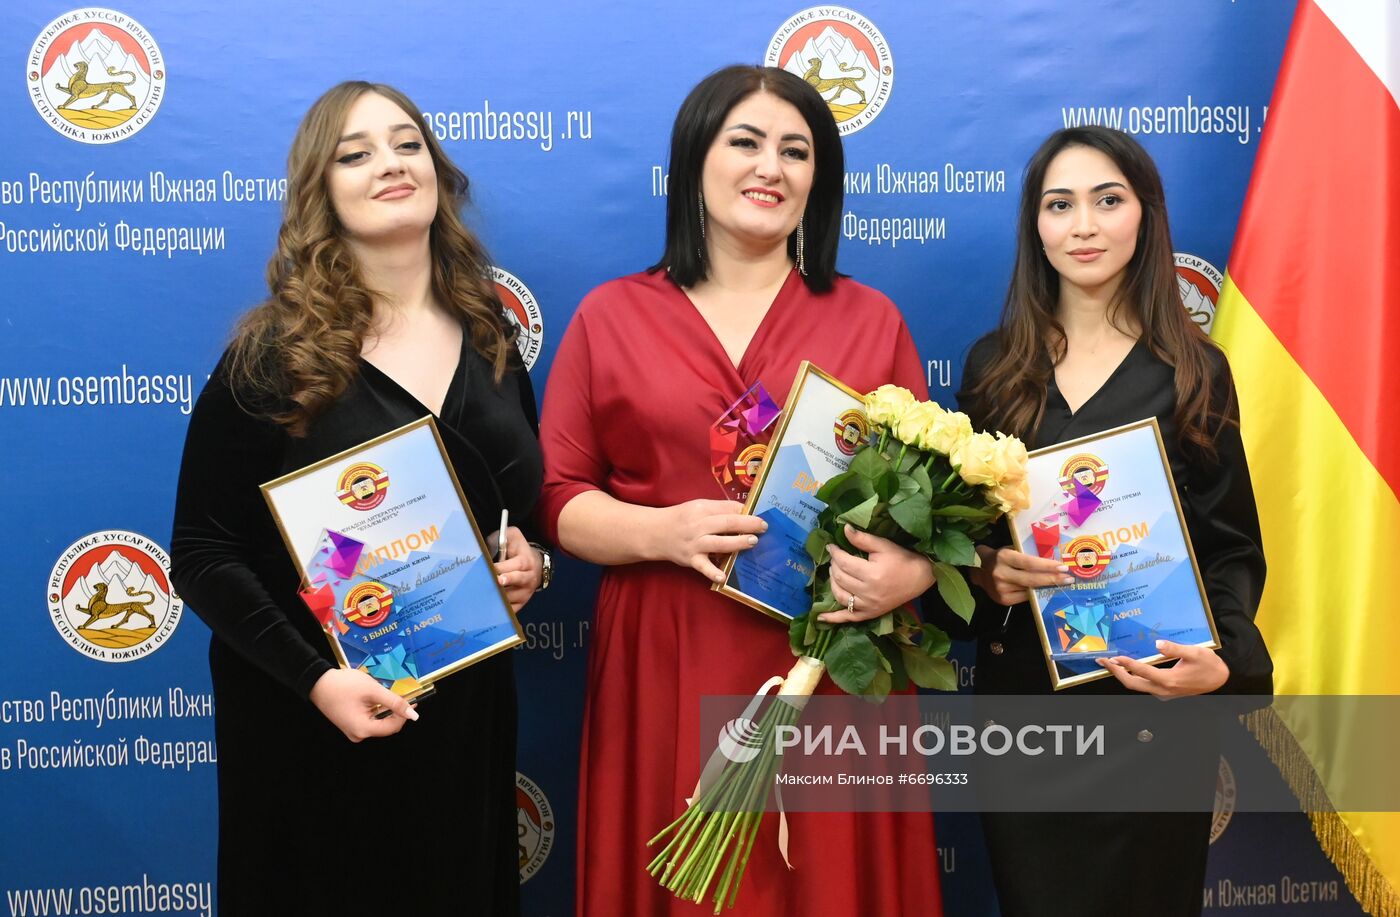 Вручение международной литературной премии "Буламаргъ"